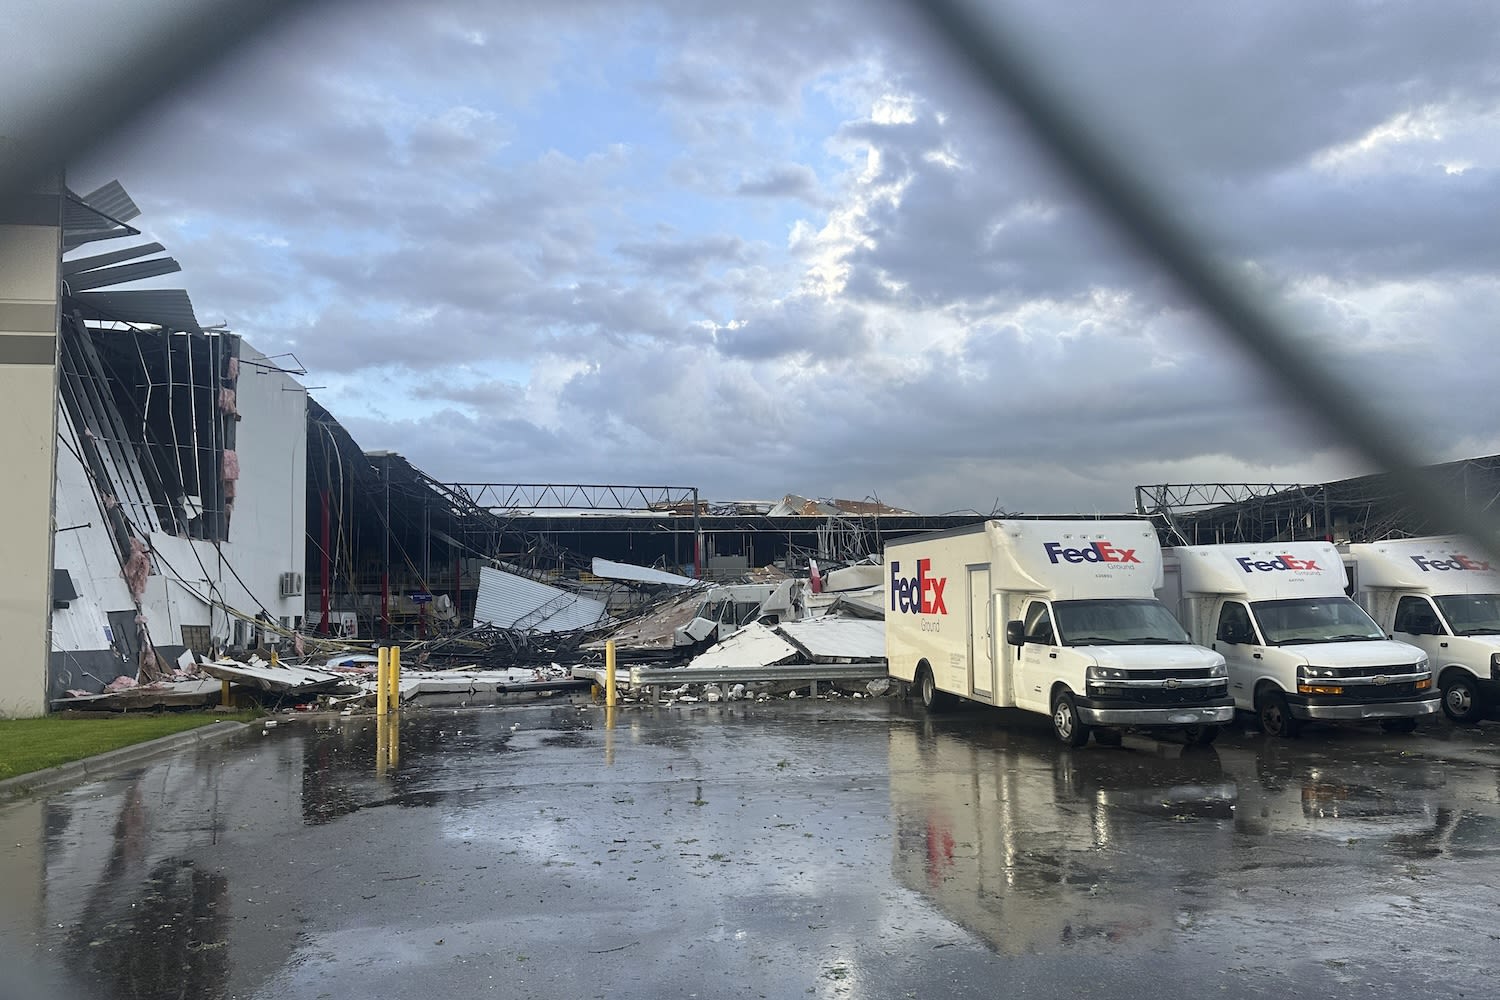 FedEx Facility Ravaged by Tornado in Michigan